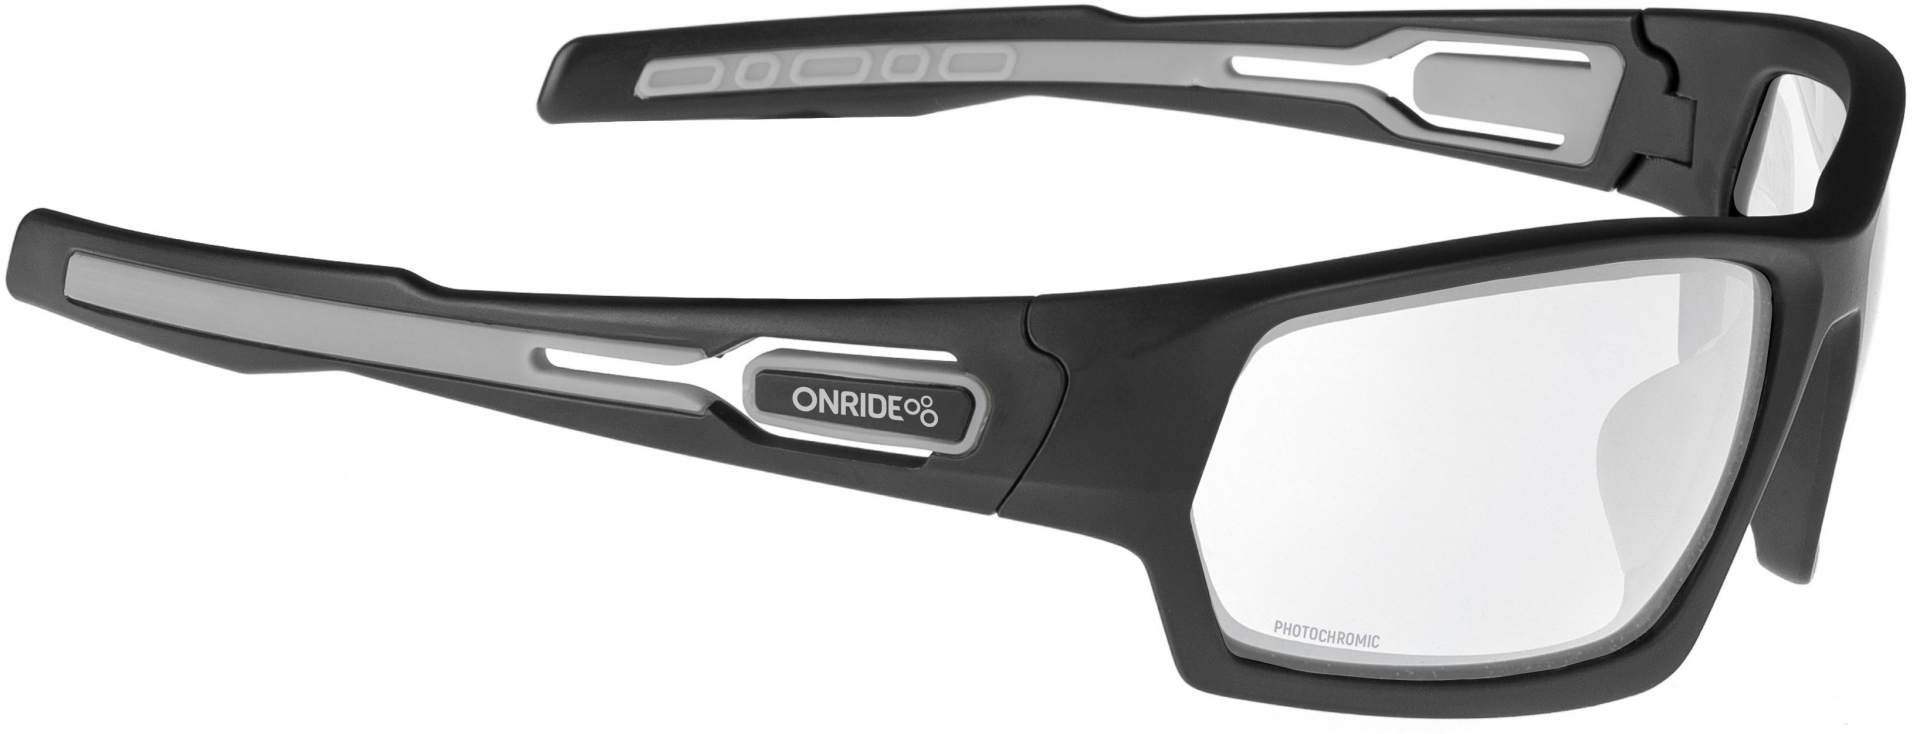 фотохромные очки Onride